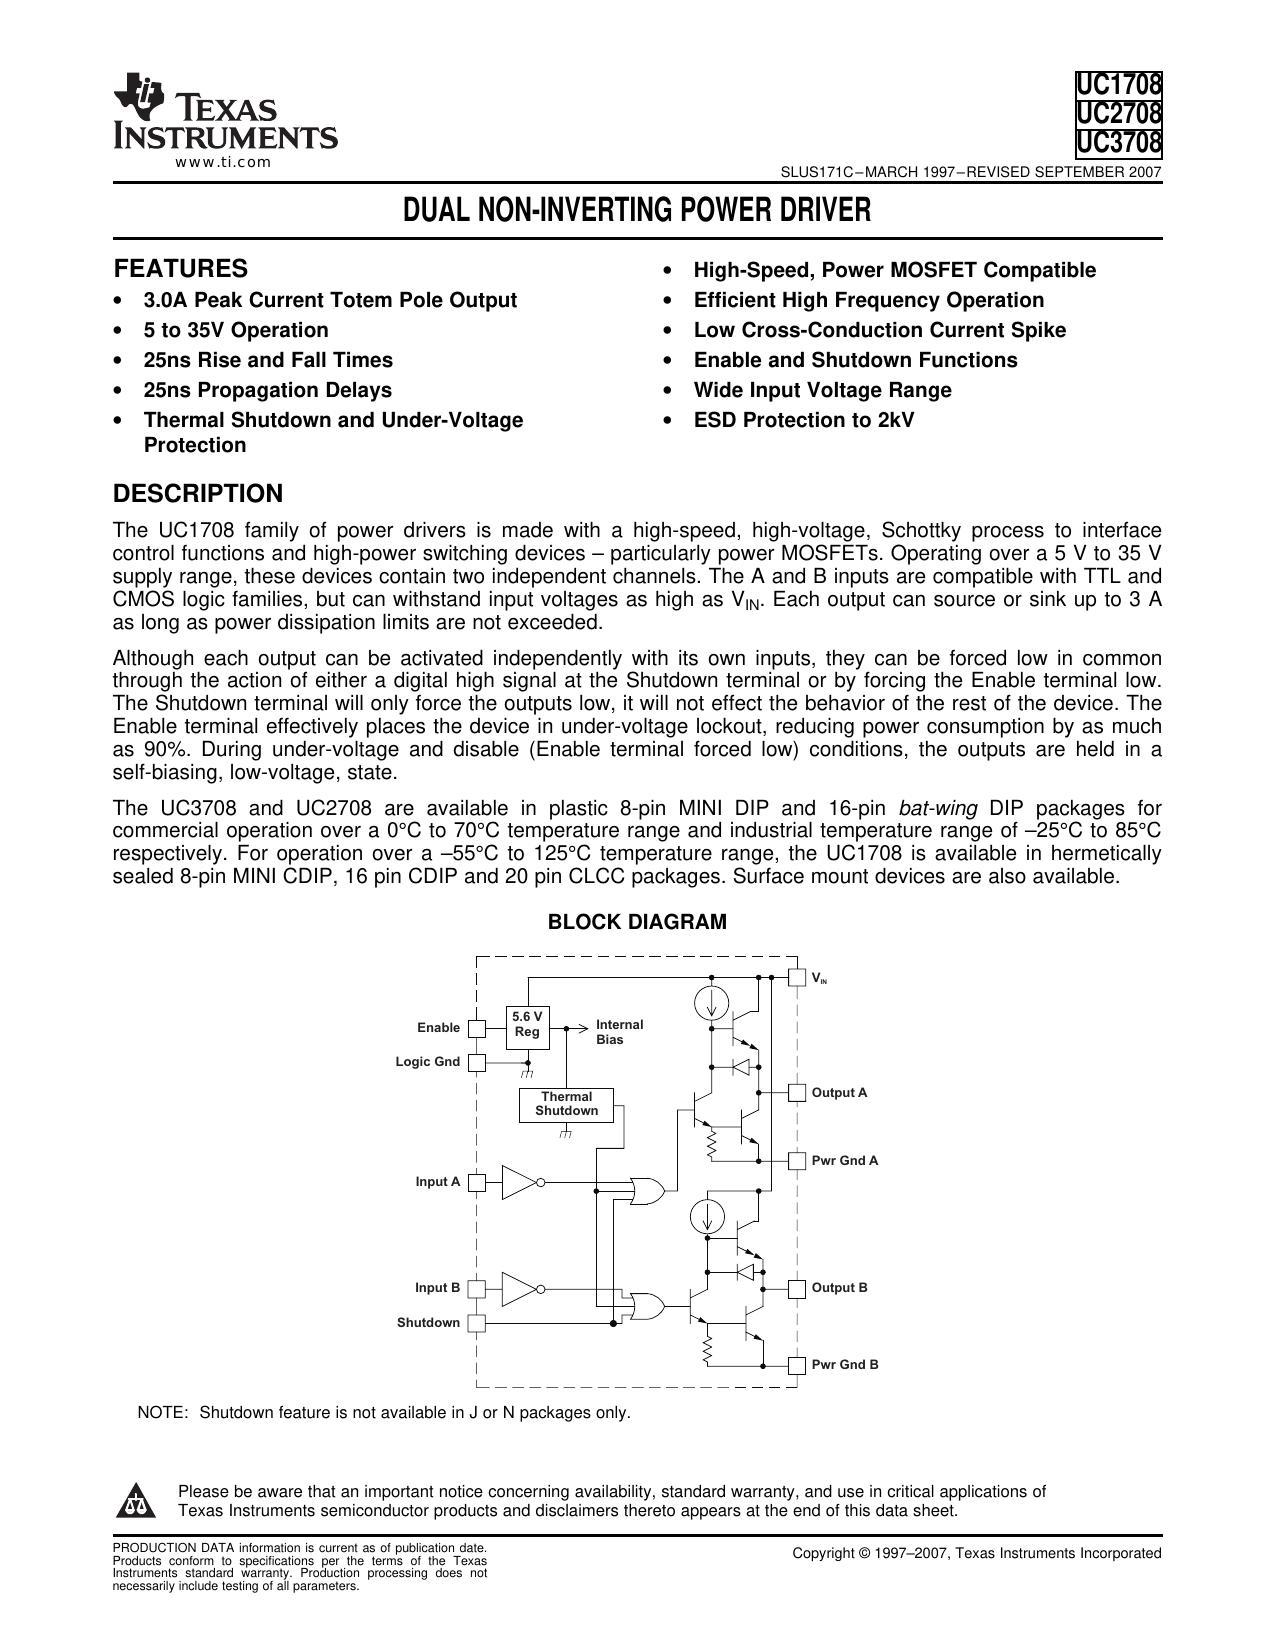 dual-non-inverting-power-driver.pdf